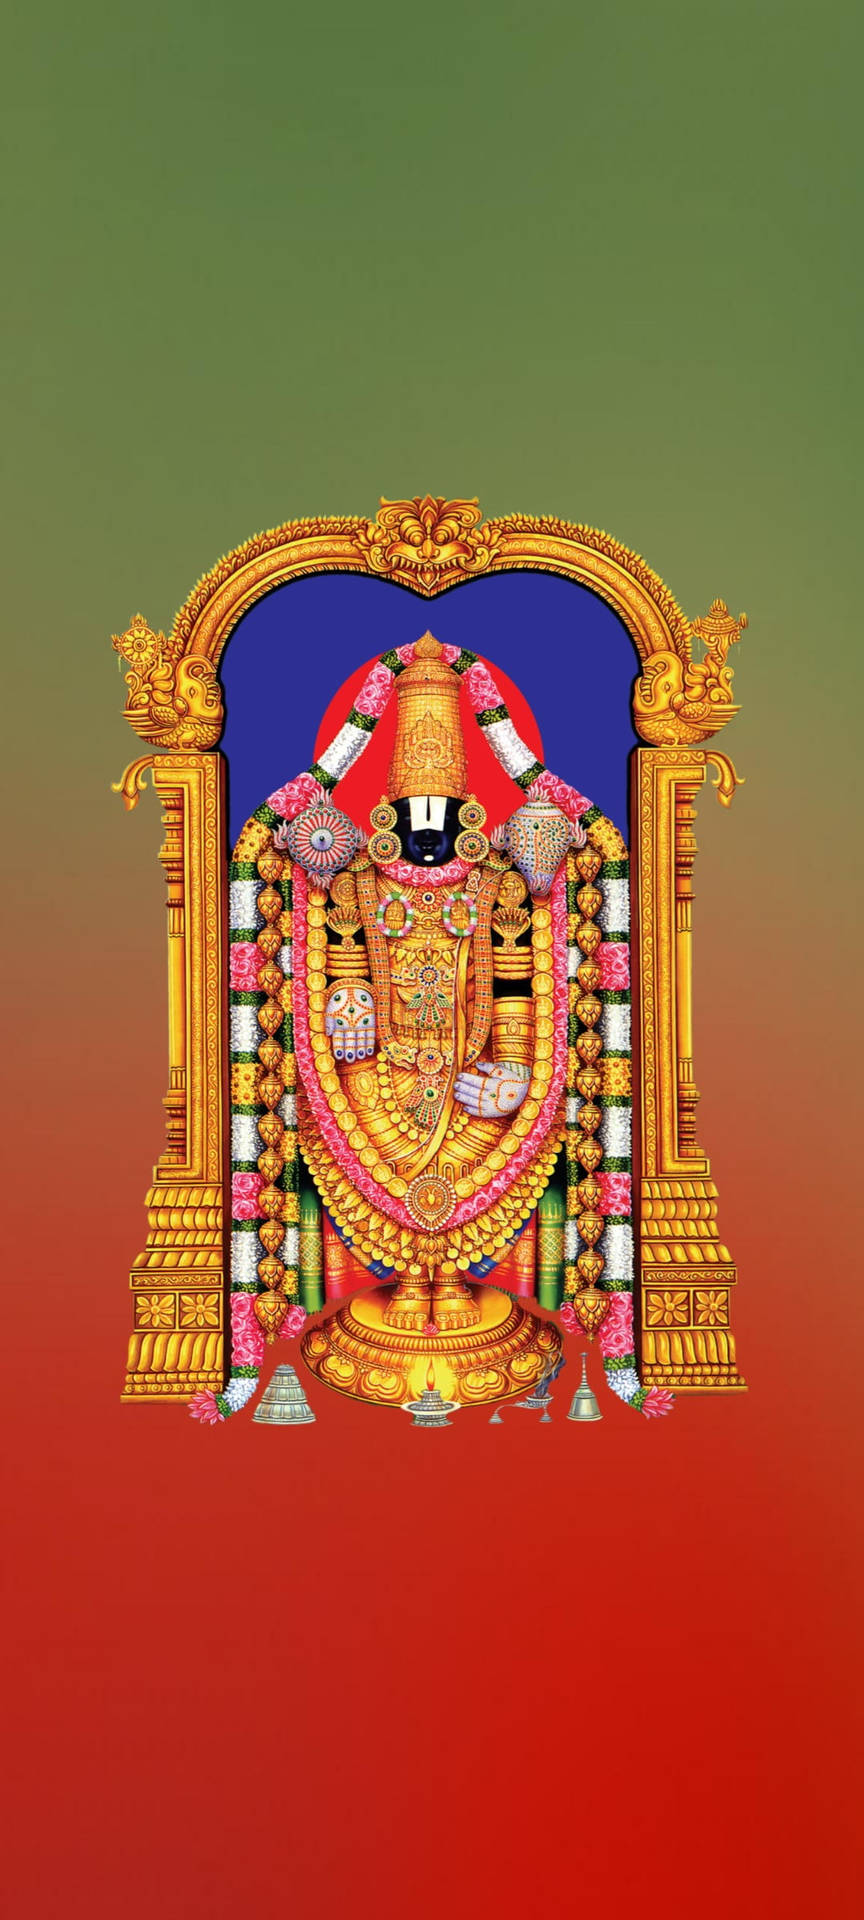 Lord Balaji med guldbue adskiller sig. Wallpaper